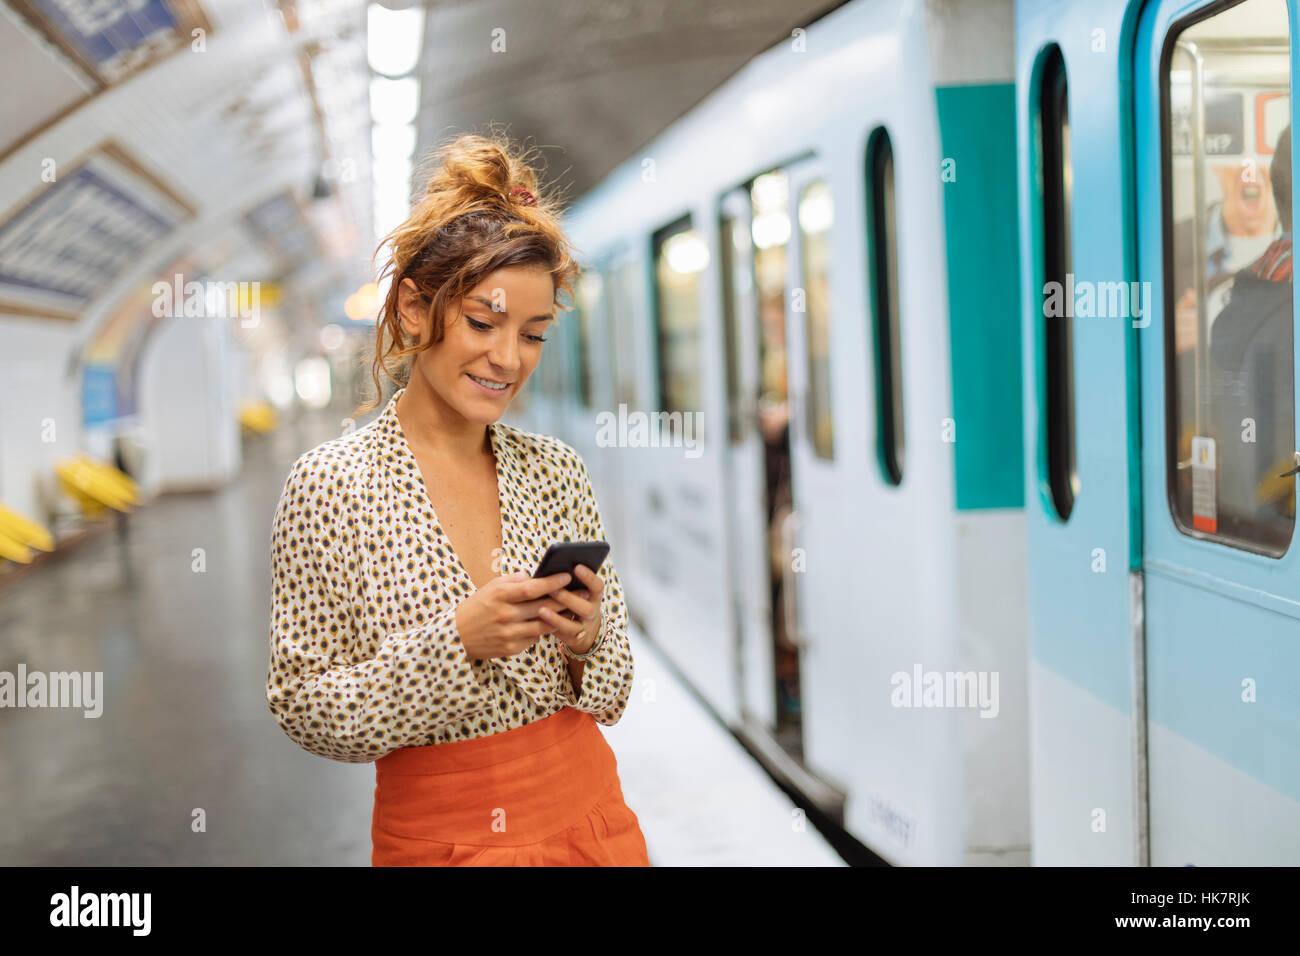 París, mujer parisina en una estación de metro Foto de stock